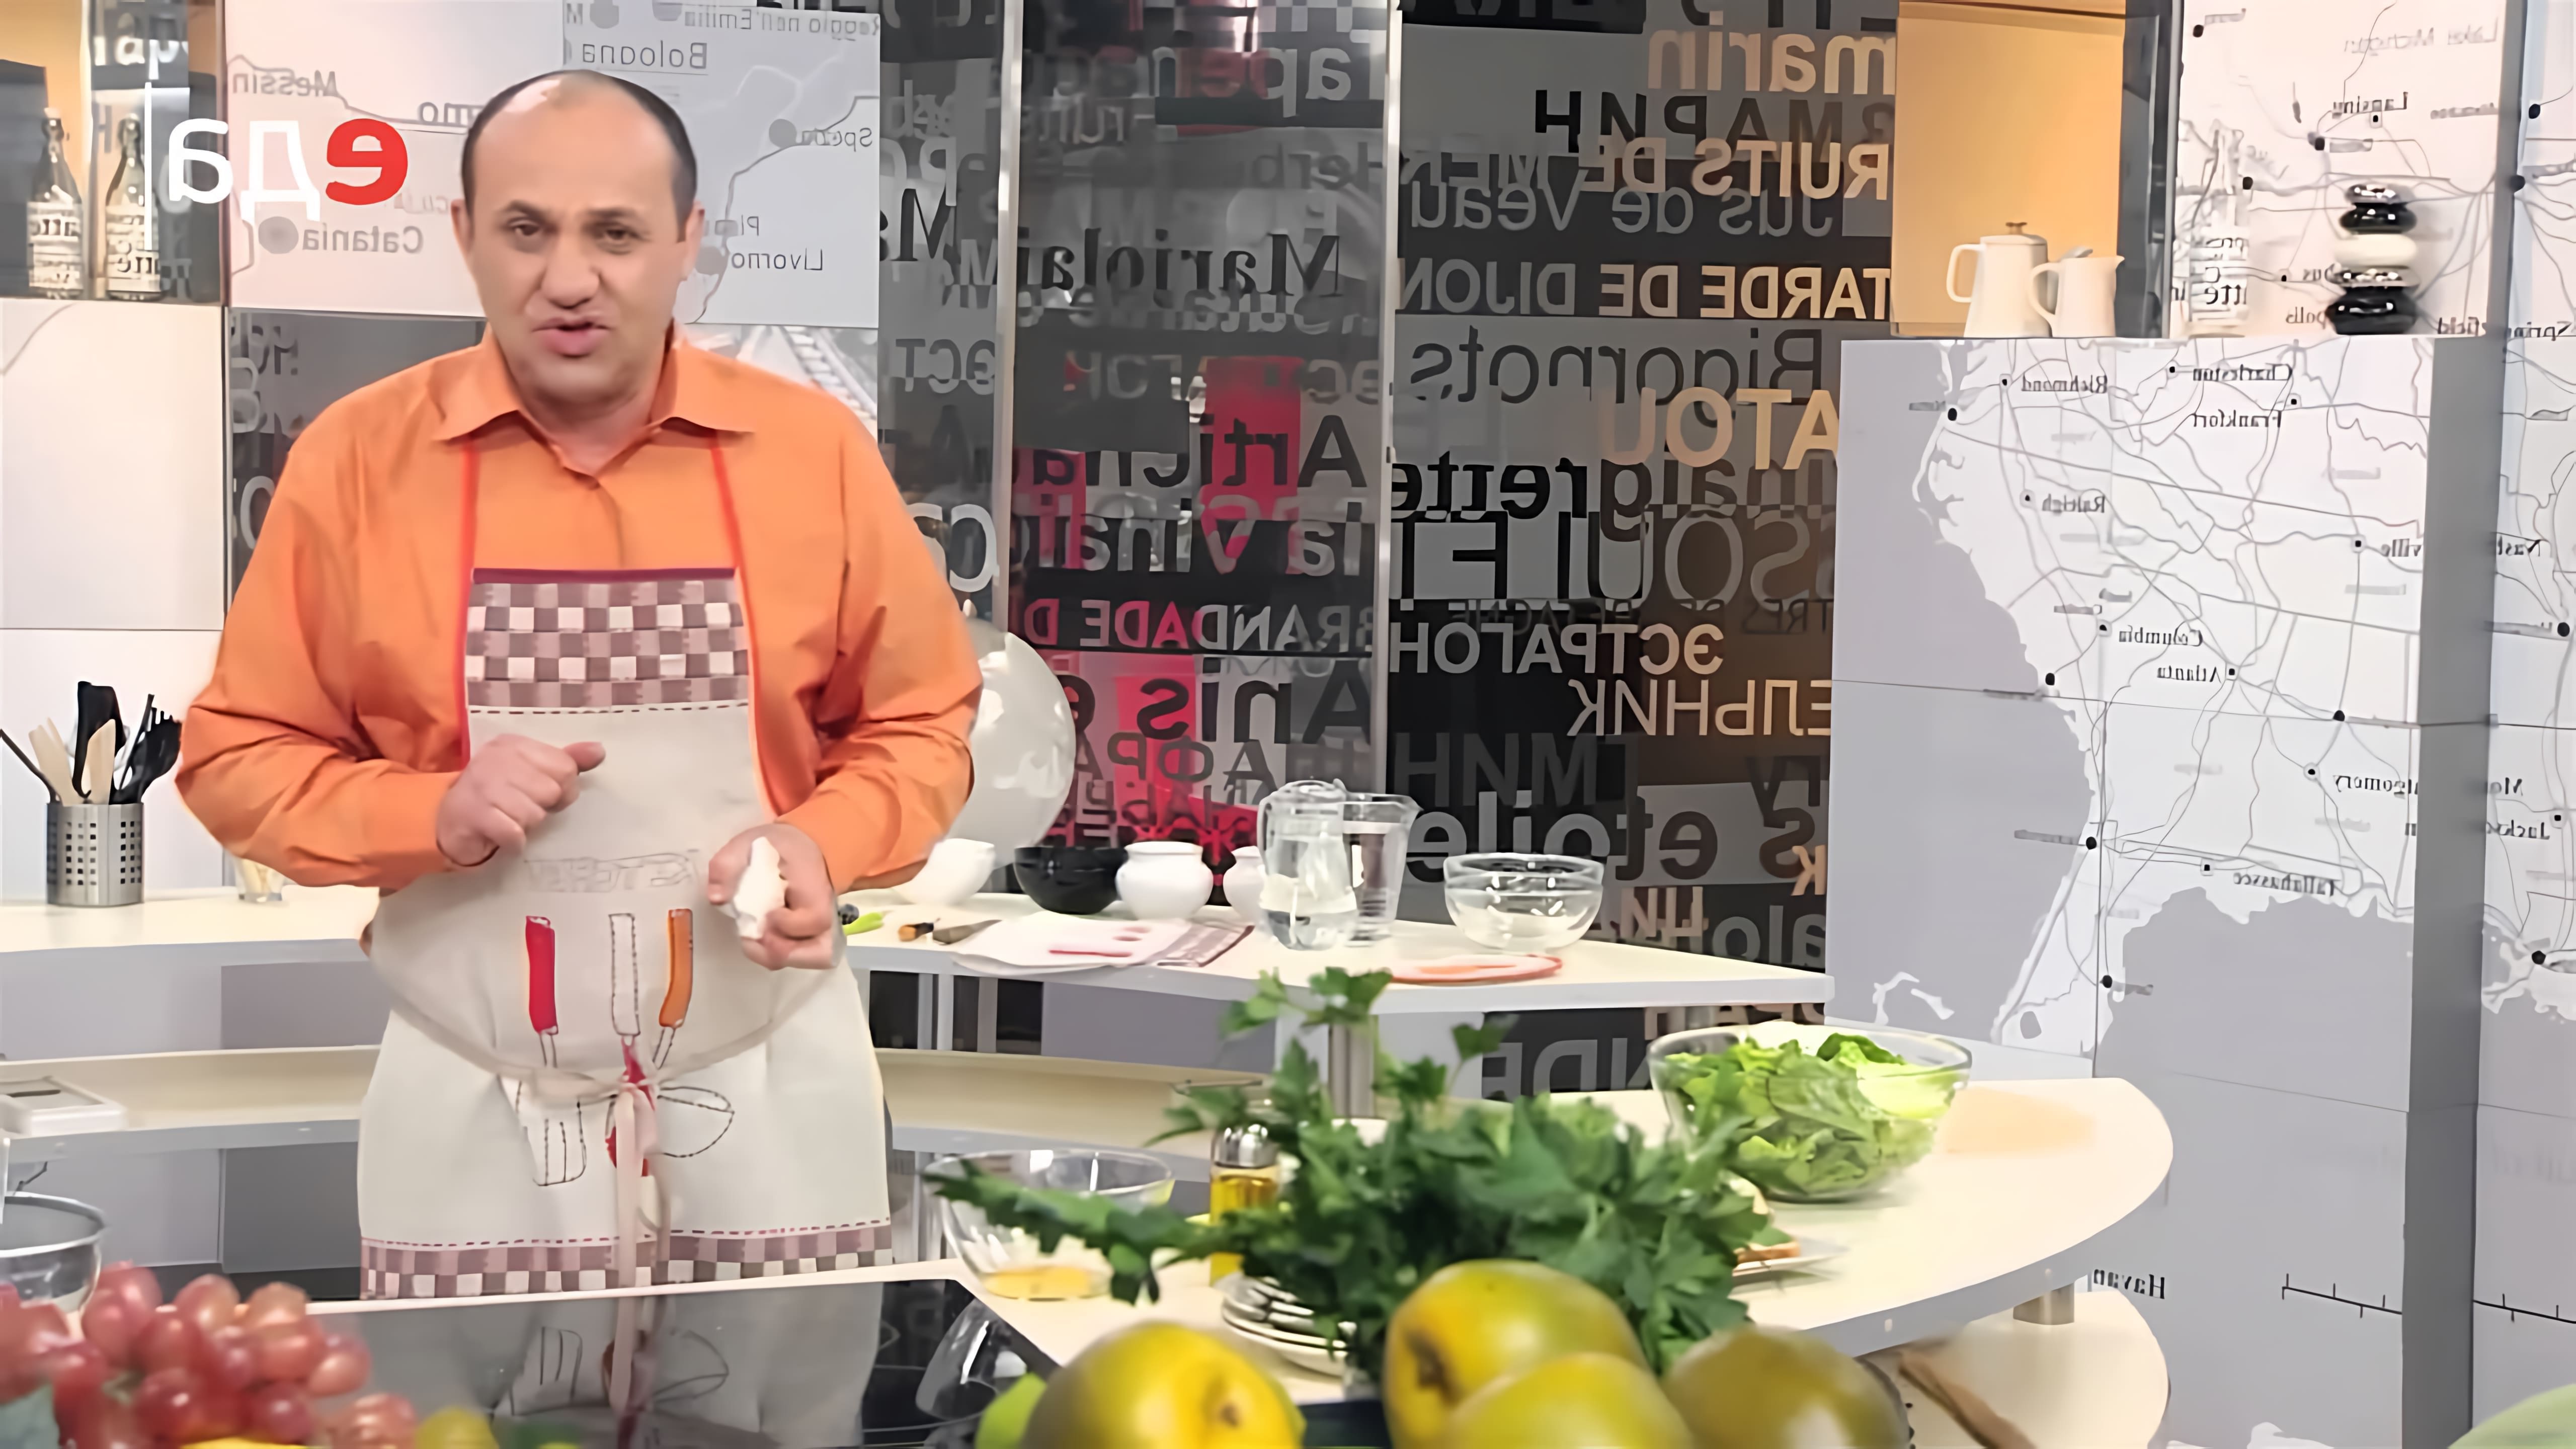 В этом видео-ролике мы увидим процесс приготовления классического салата "Цезарь" на кухне США